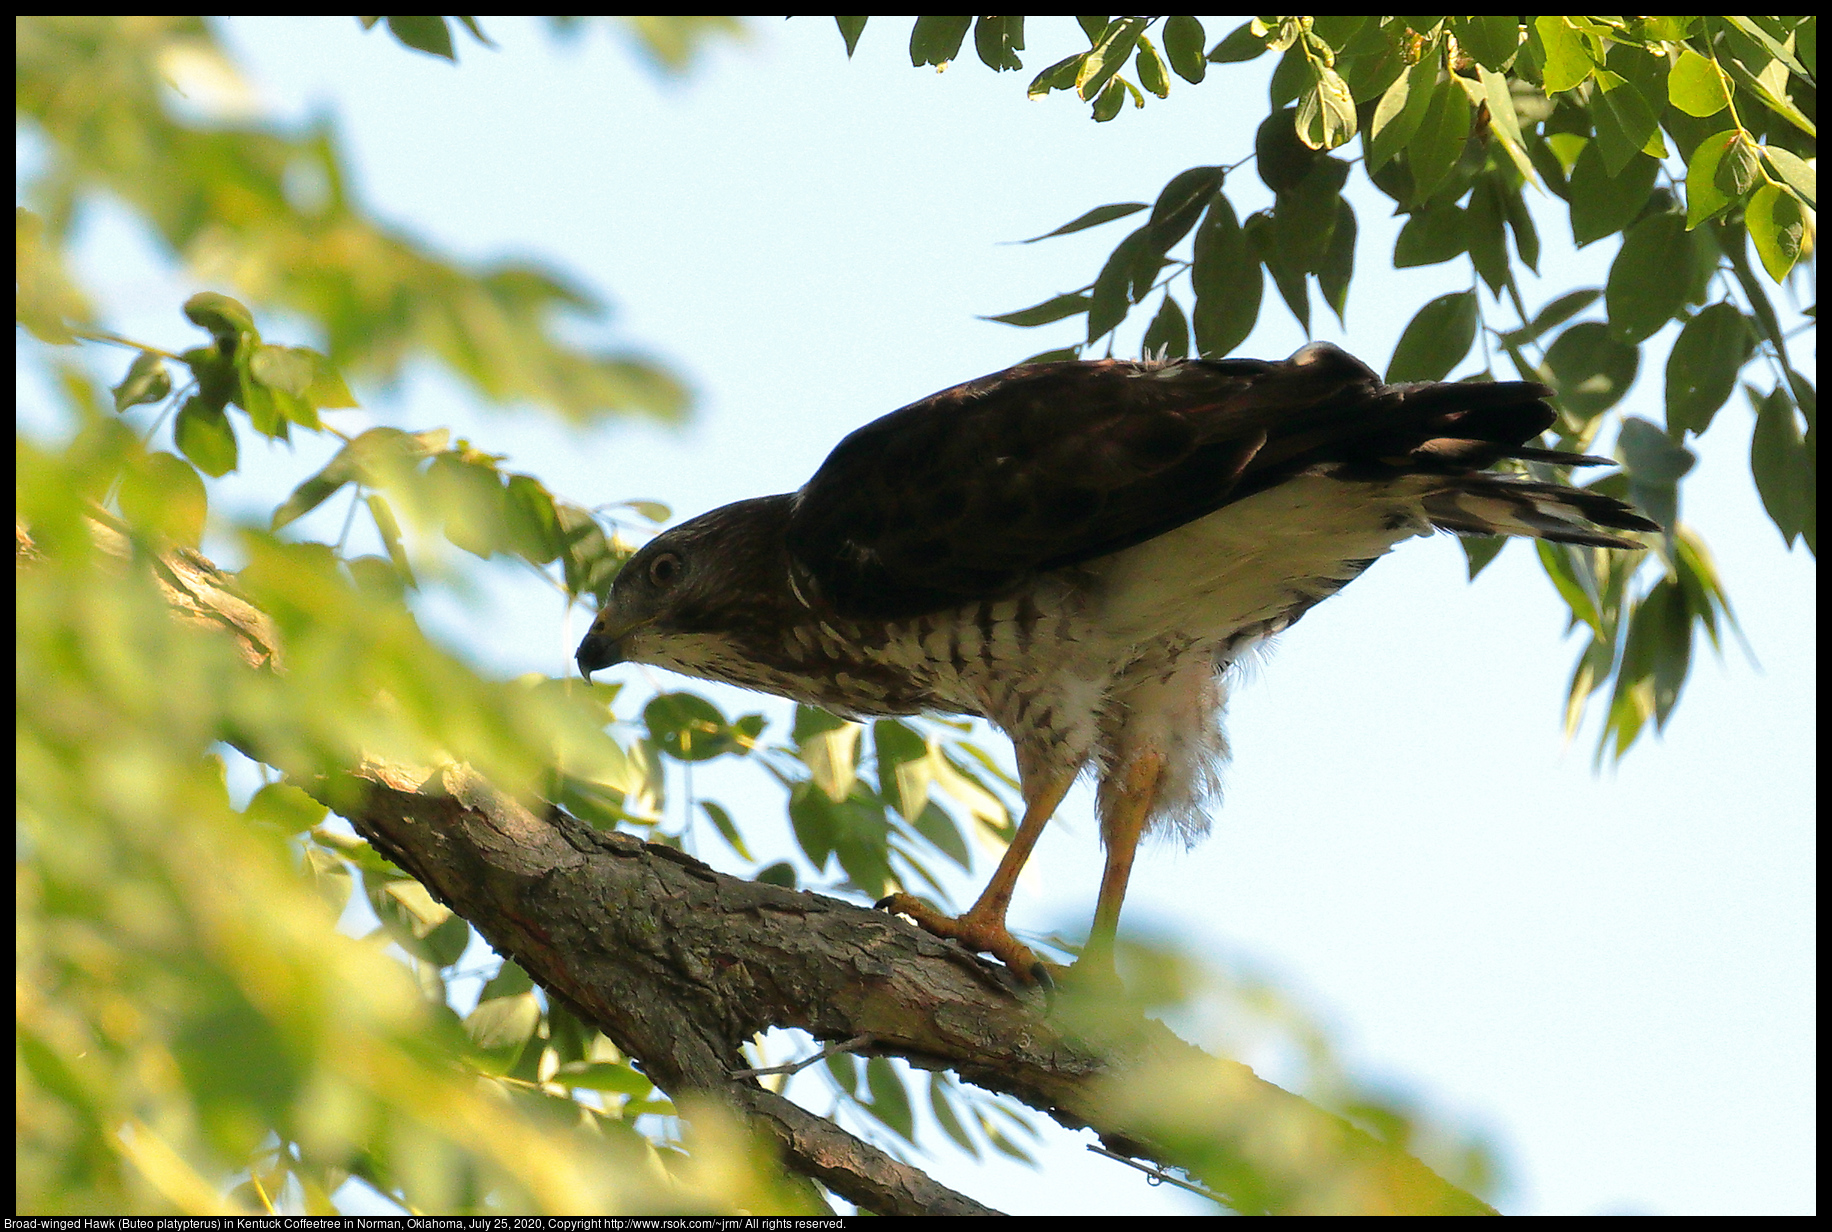 Broad-winged Hawk (Buteo platypterus) in Kentuck Coffeetree in Norman, Oklahoma, July 25, 2020